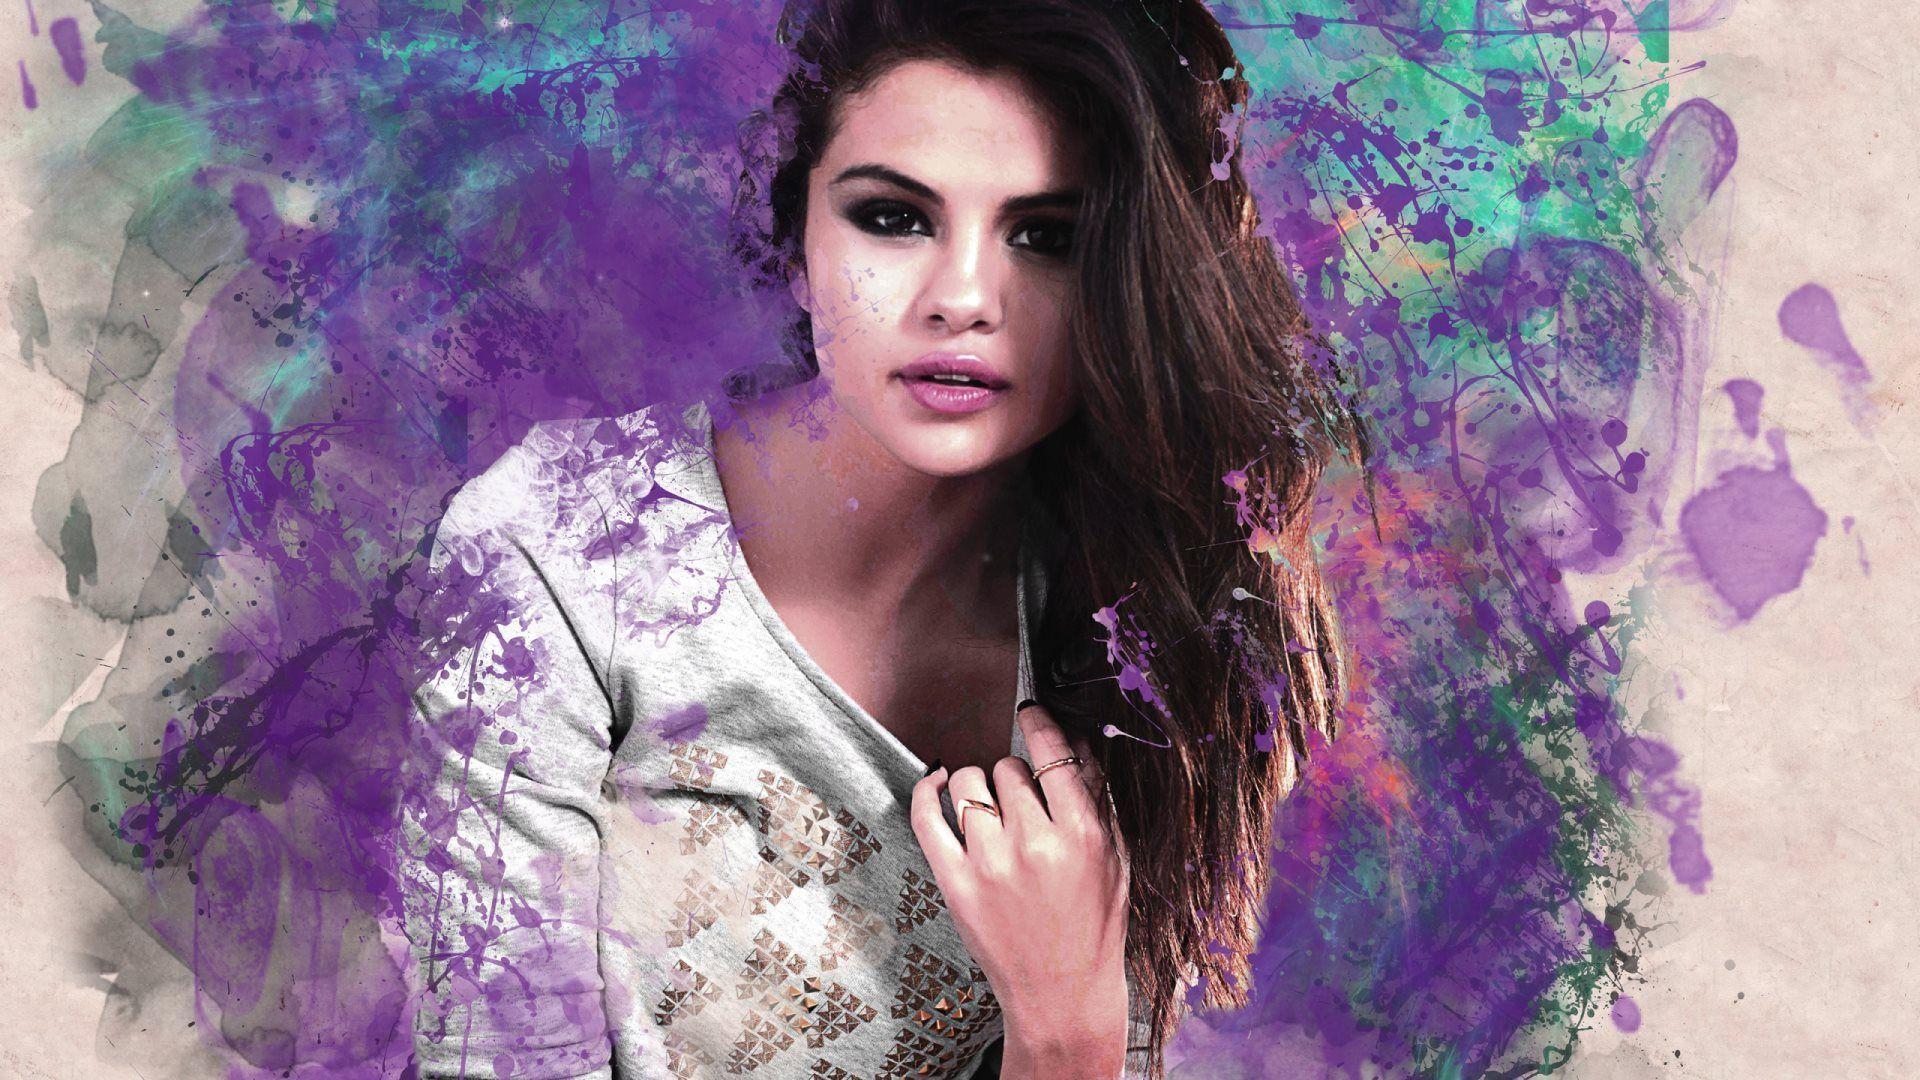 Fan Art of Selena Gomez HD Wallpaper. 4K